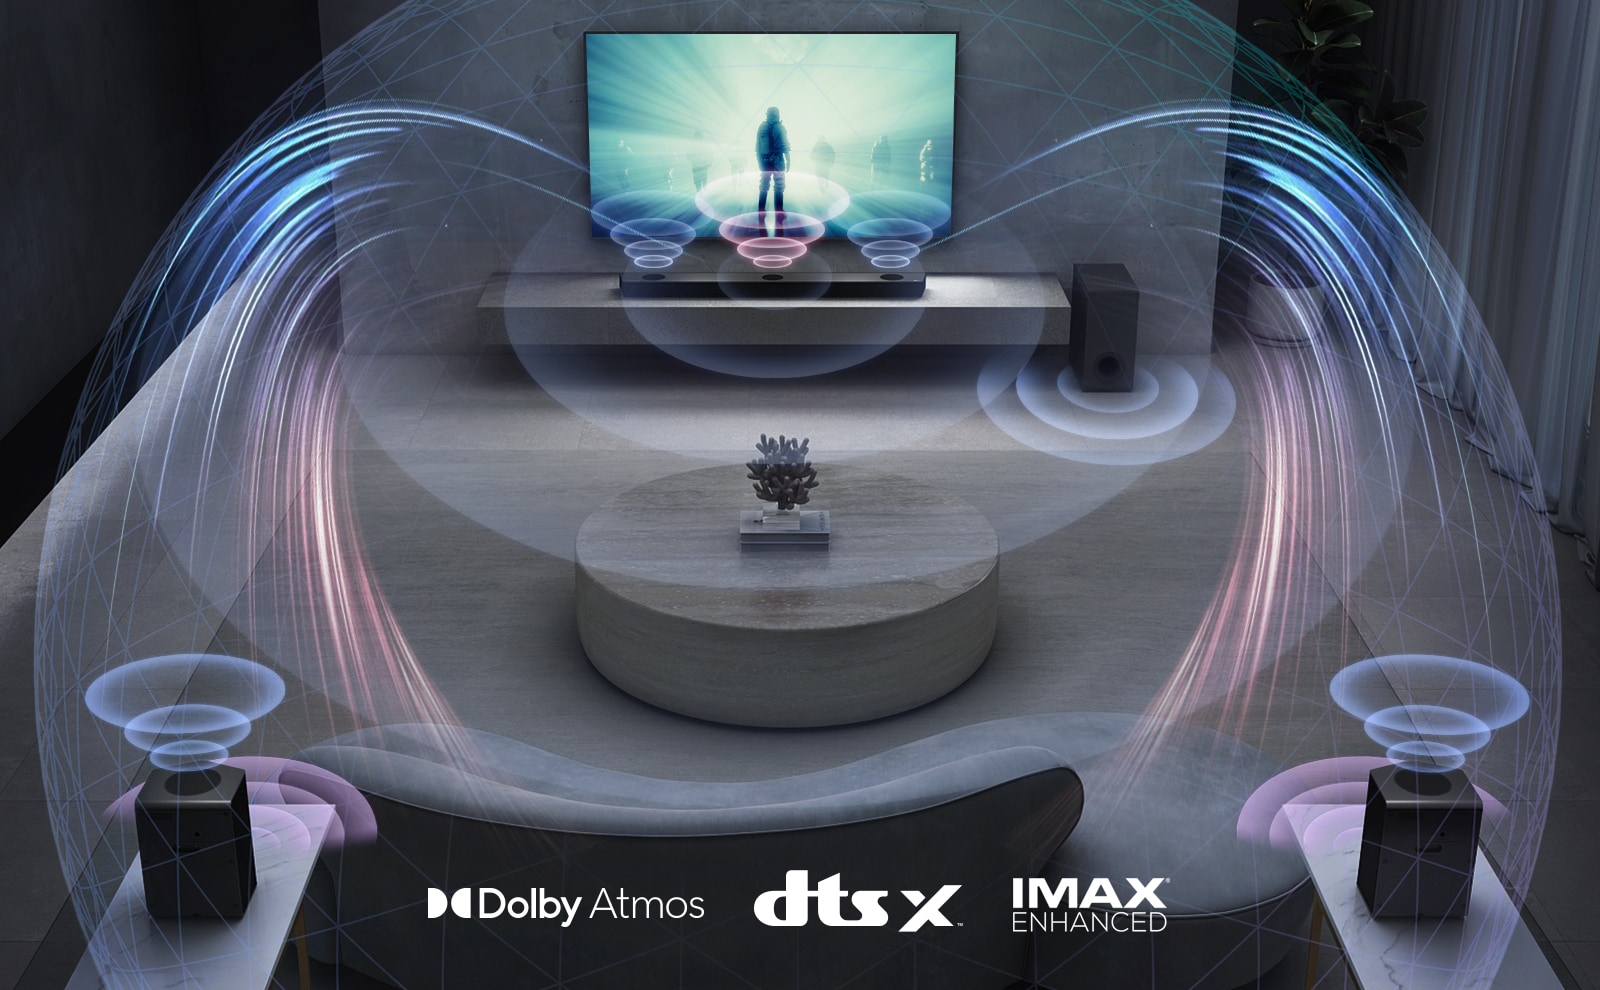 В гостиной телевизор LG на стене, на экране фильм. Саундбар LG находится прямо под телевизором на серой полке, рядом стоит сабвуфер. Комплект из 2 тыловых динамиков находится в задней части гостиной. Графика звуковых эффектов выходит из каждого динамика. Логотип Dolby Atmos и DTS:X, IMAX Enhanced показан в середине нижней части изображения.